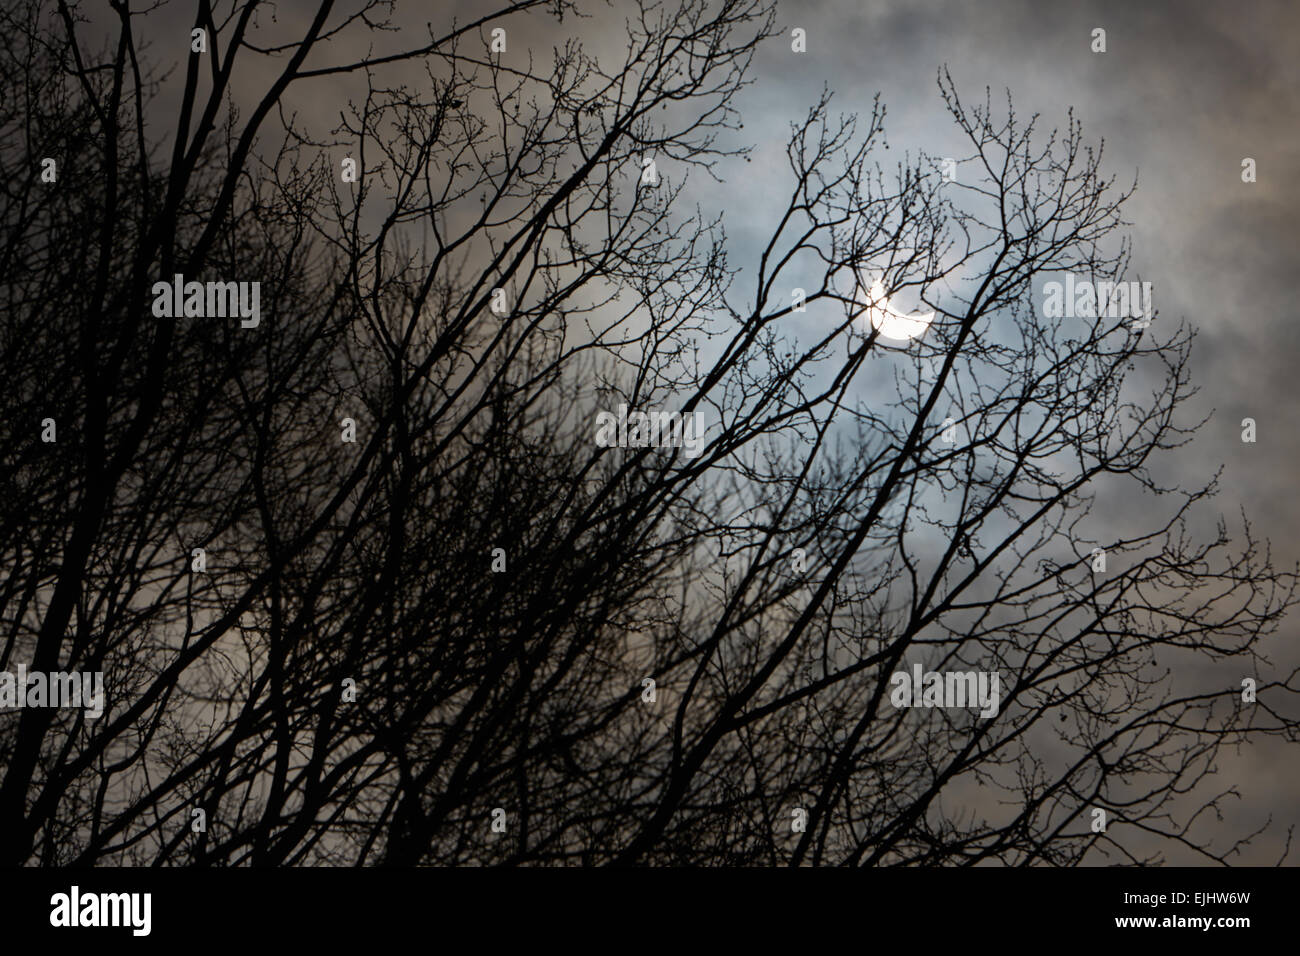 Eclipse Solar y ramas de árbol de invierno con el cielo nublado, oscuro y misterio Foto de stock